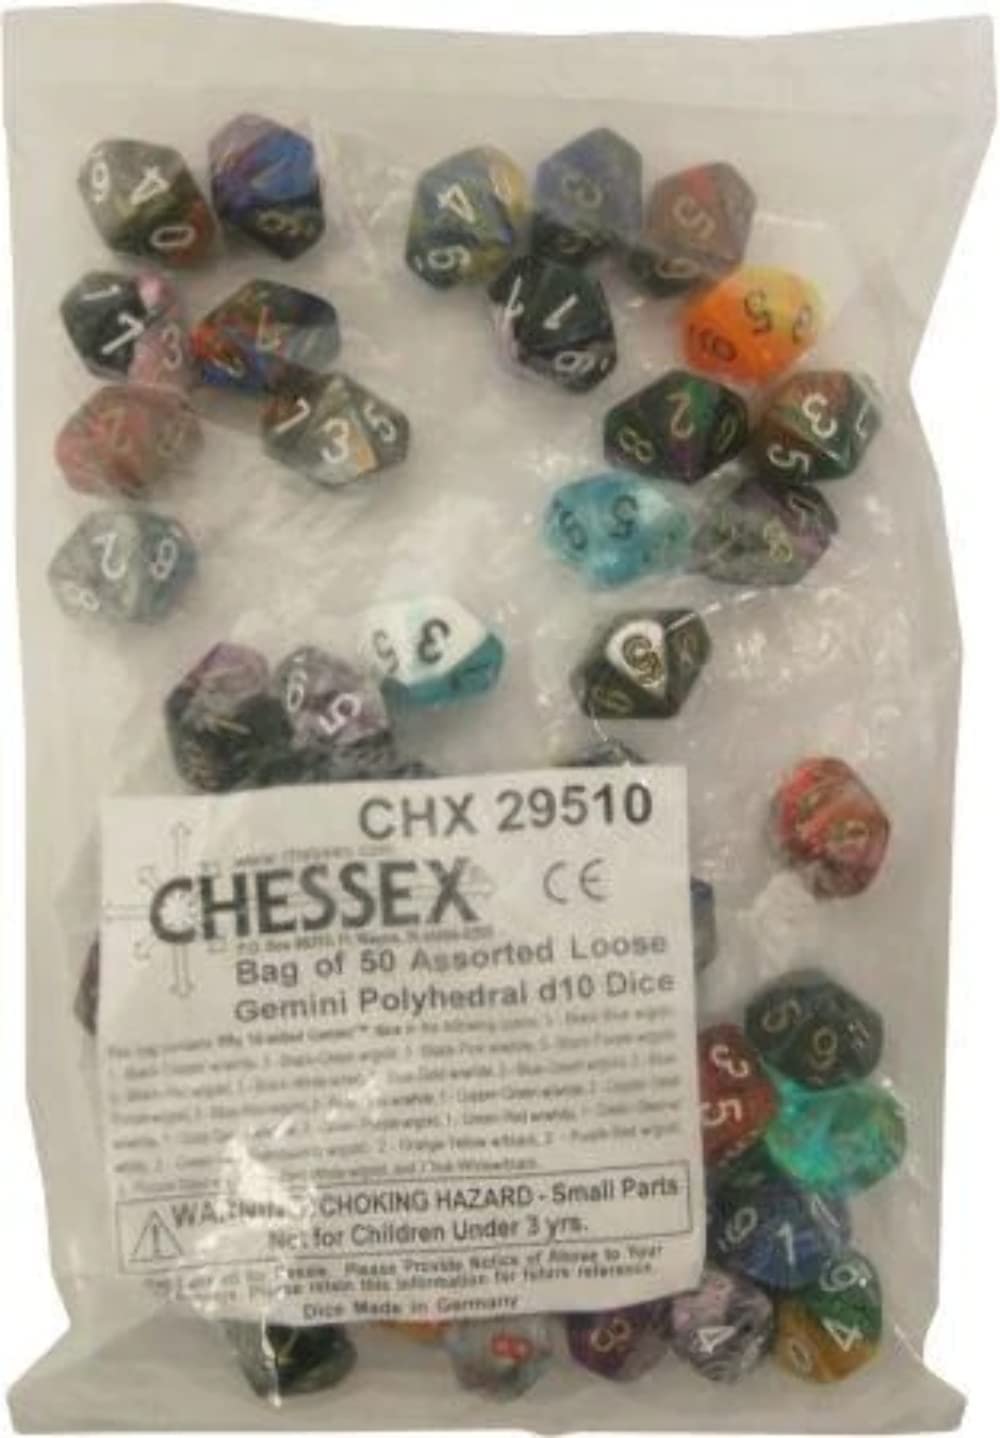 Chessex 29510 accessories